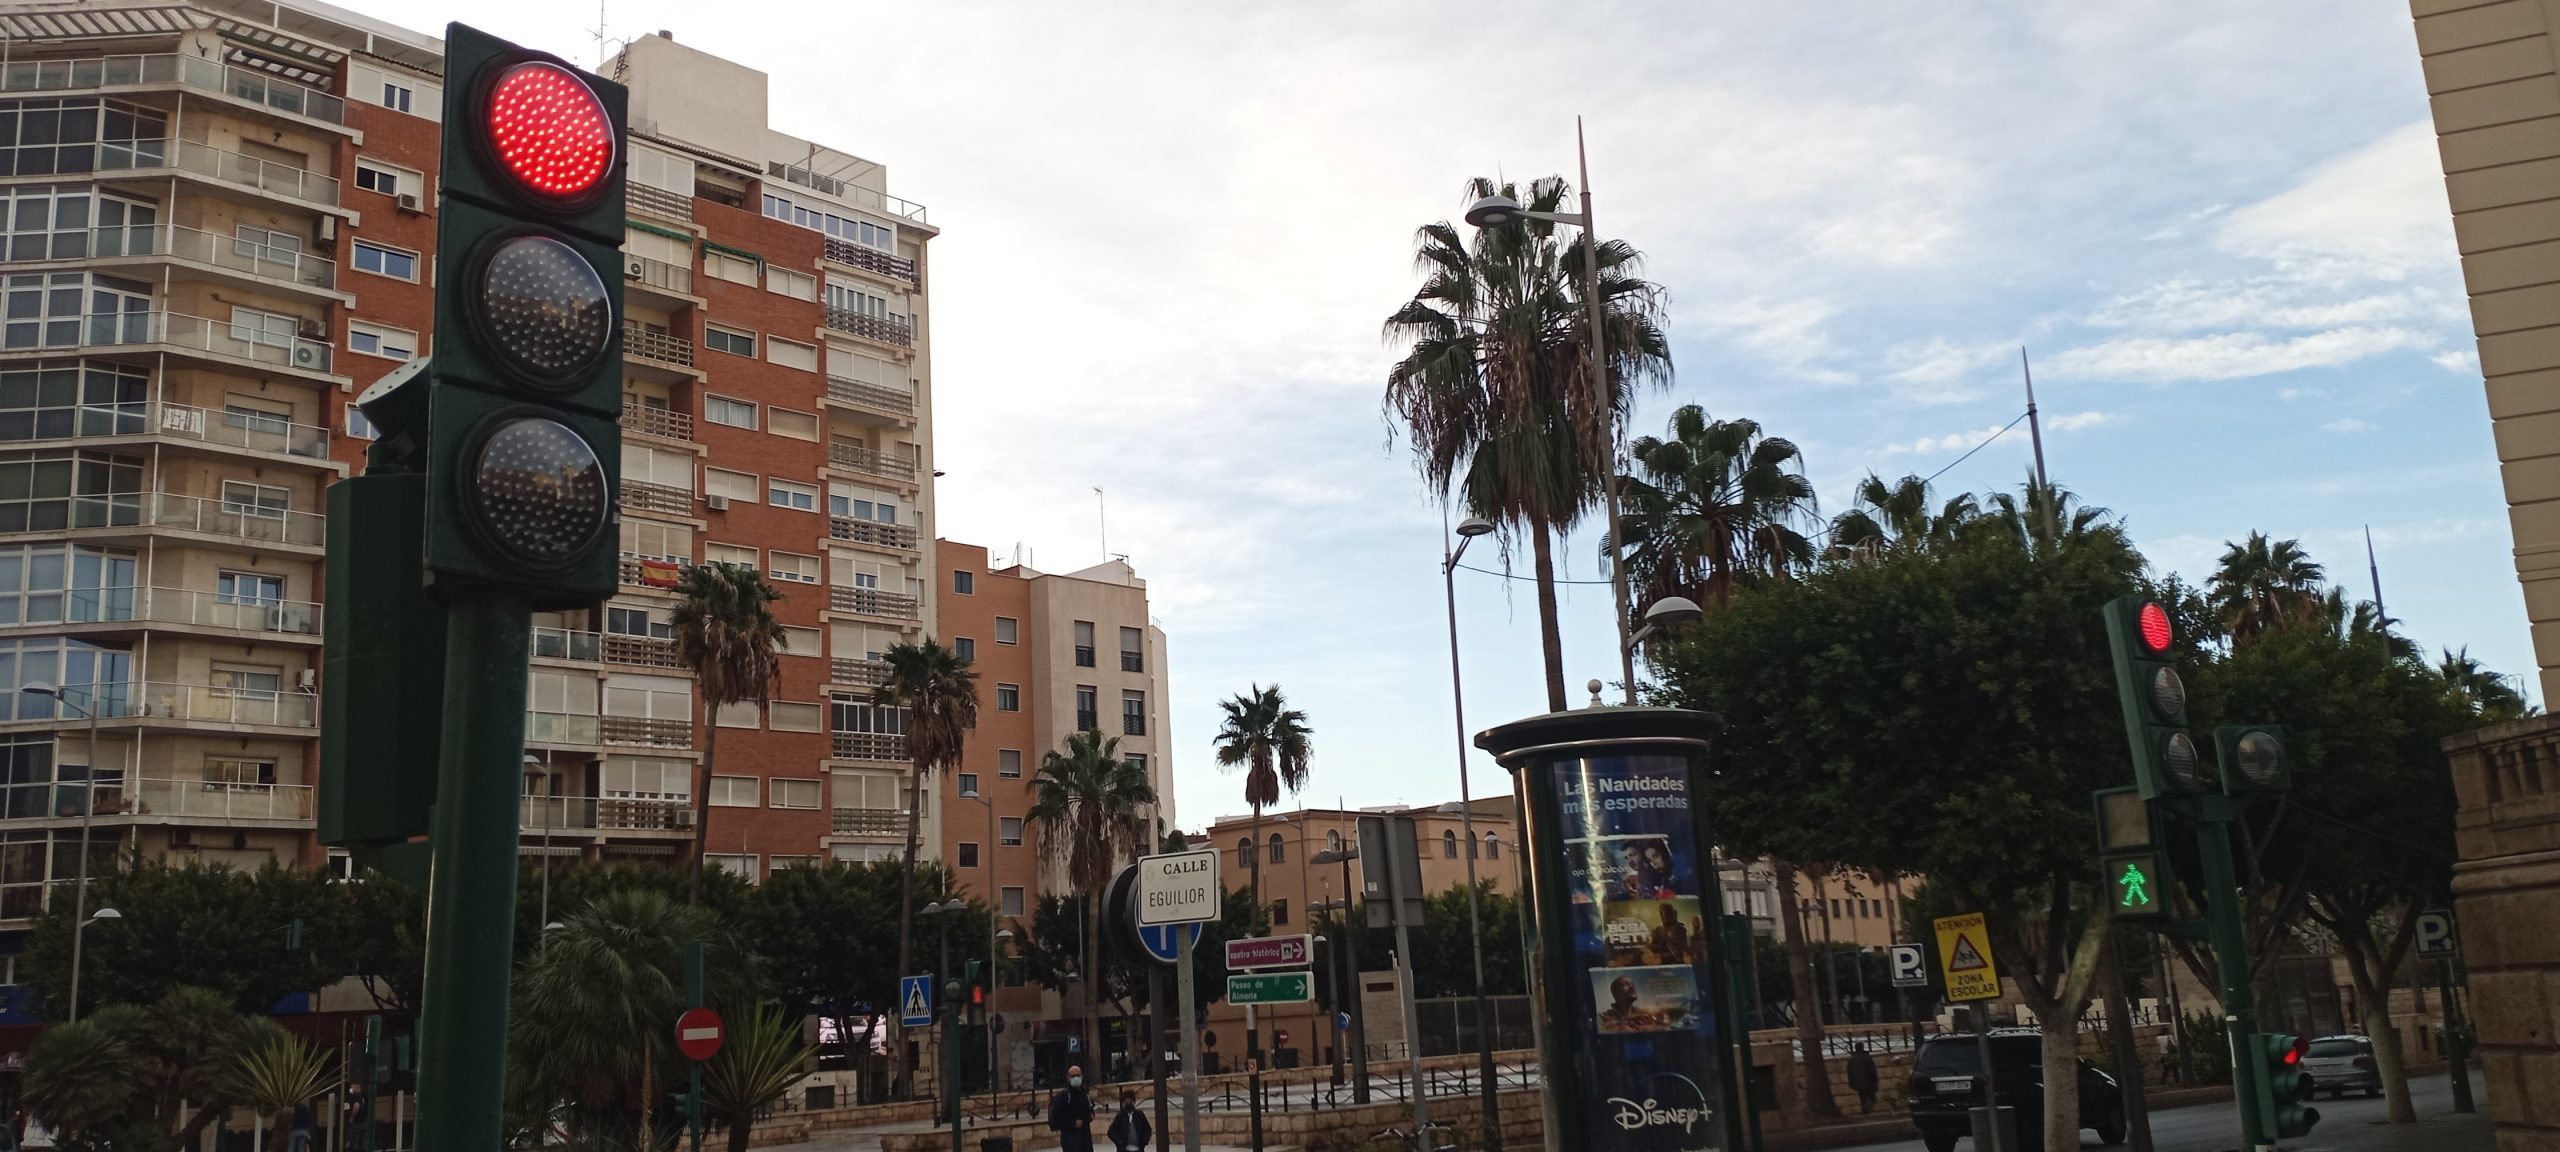 Almería incorpora semáforos adaptados para personas invidentes que se activan con el bluetooth del móvil